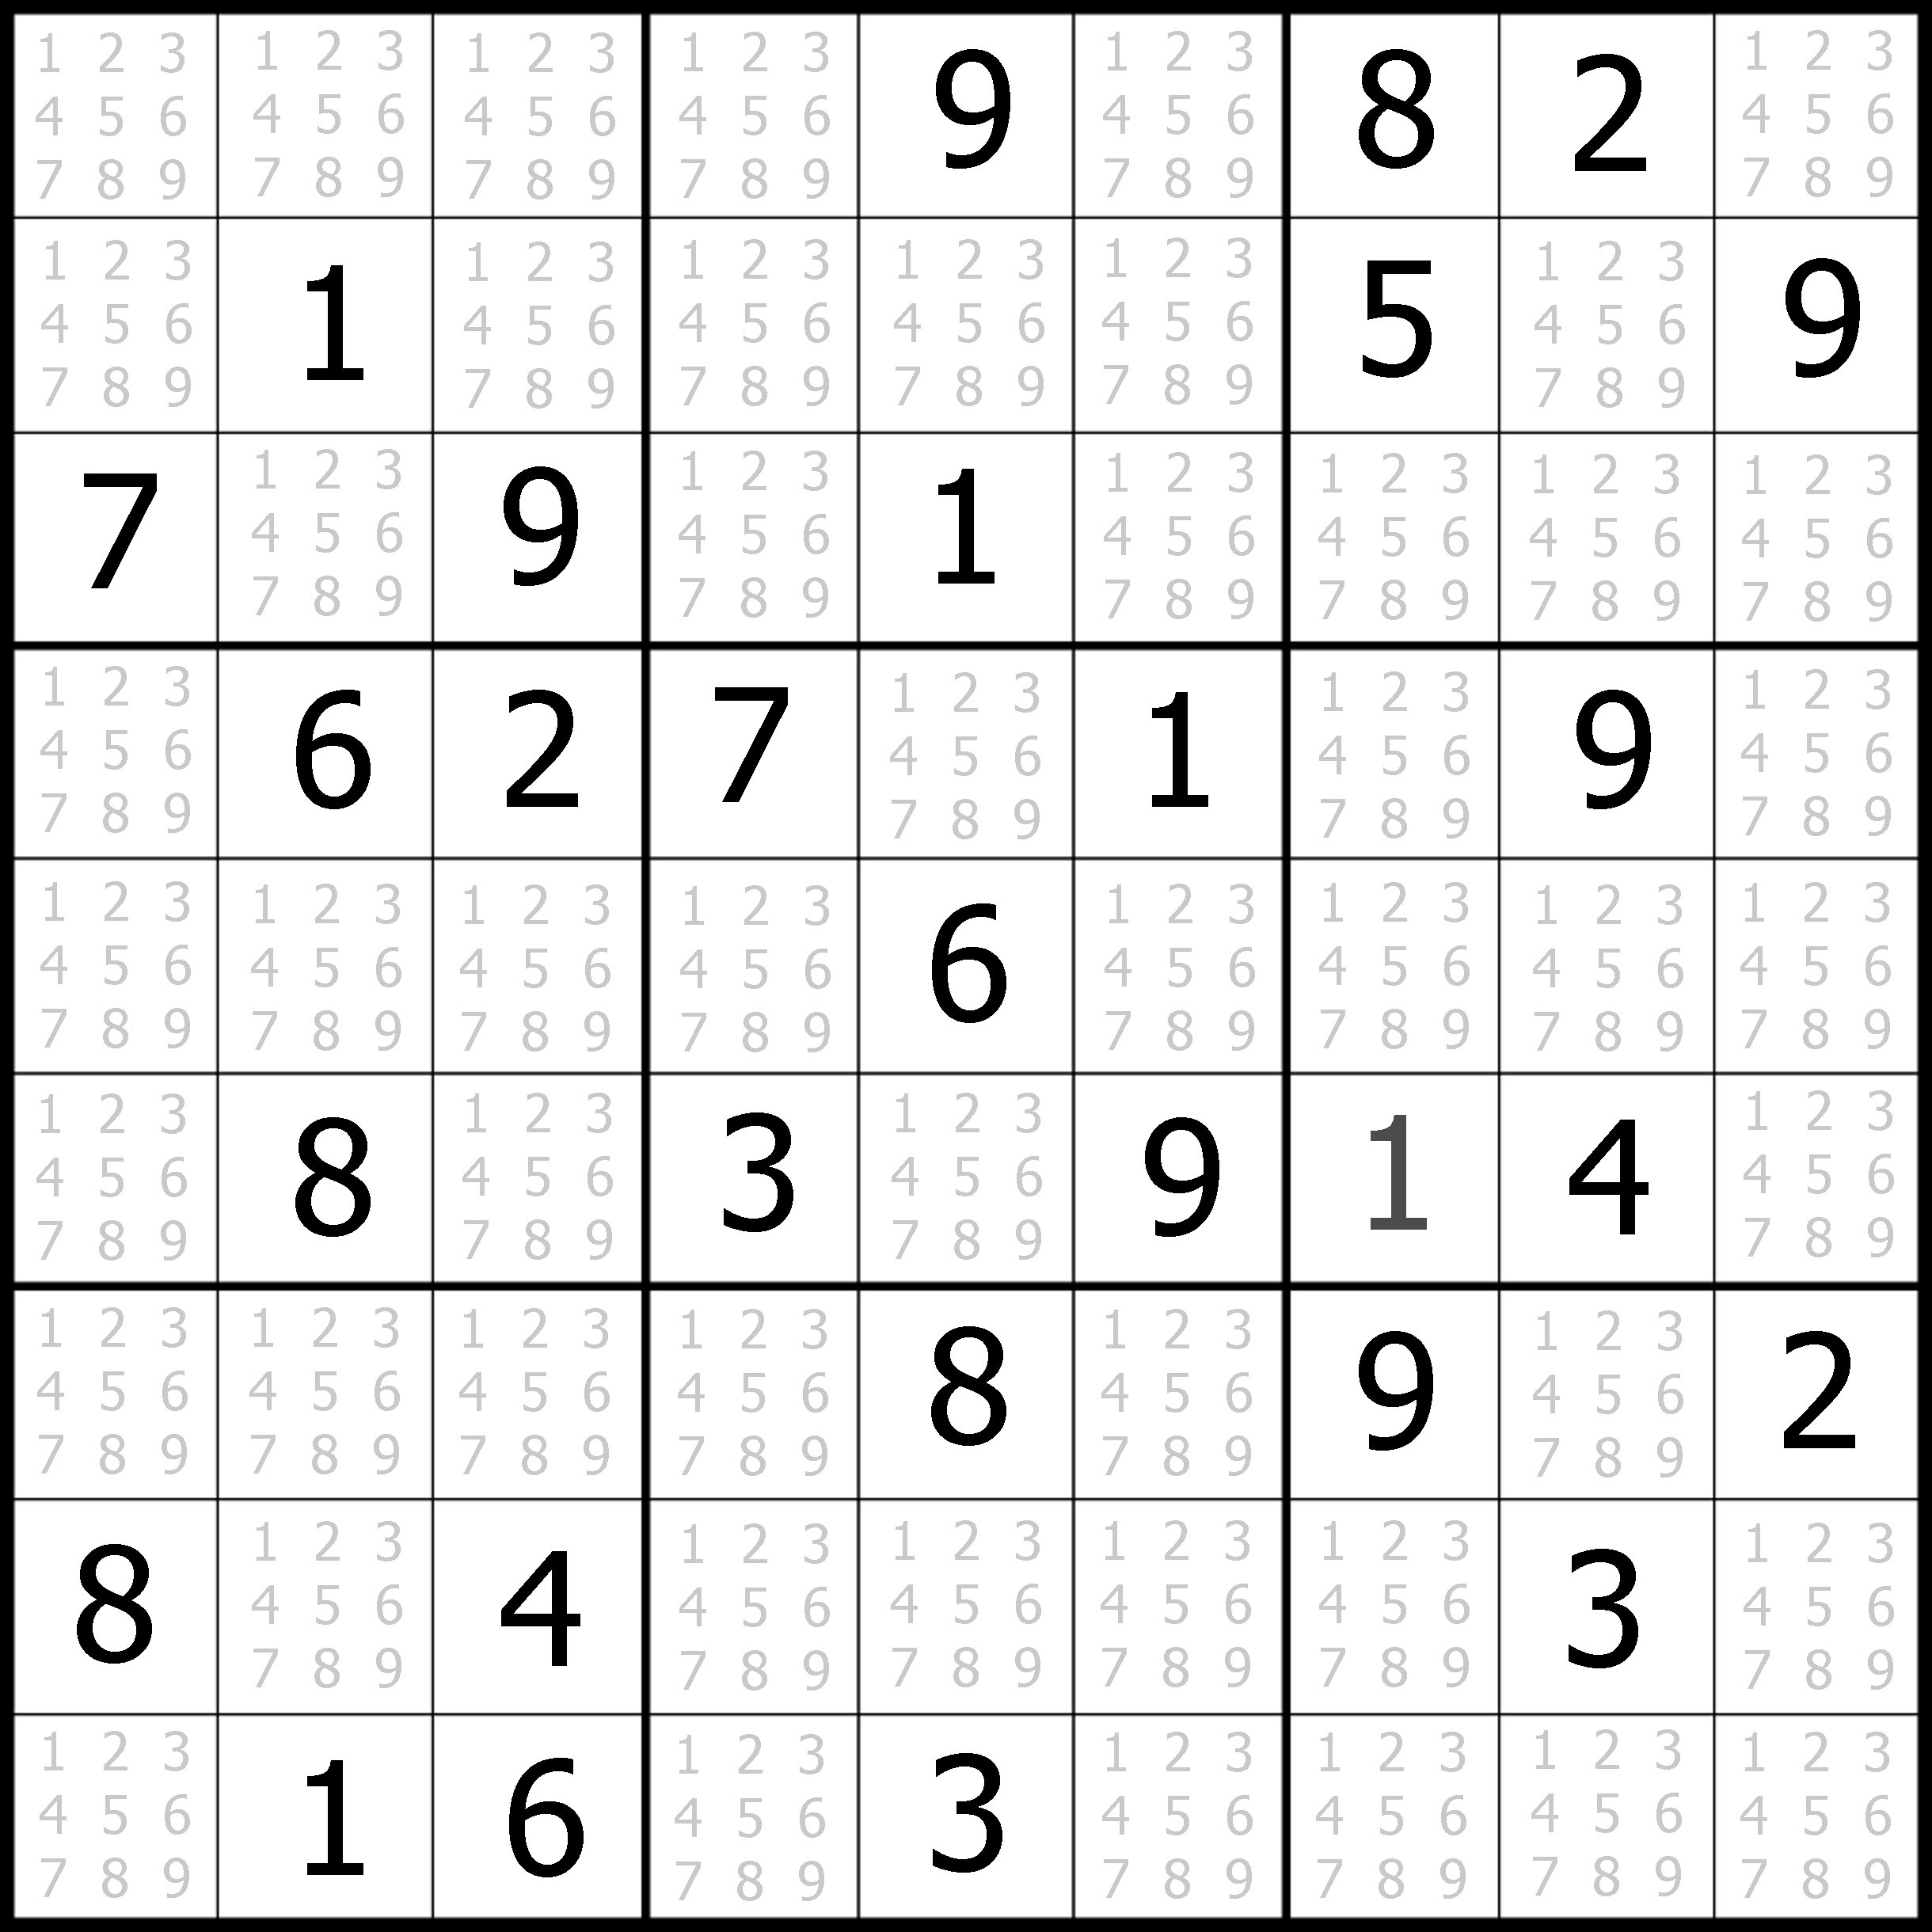 Free Printable Sudoku Puzzles.com